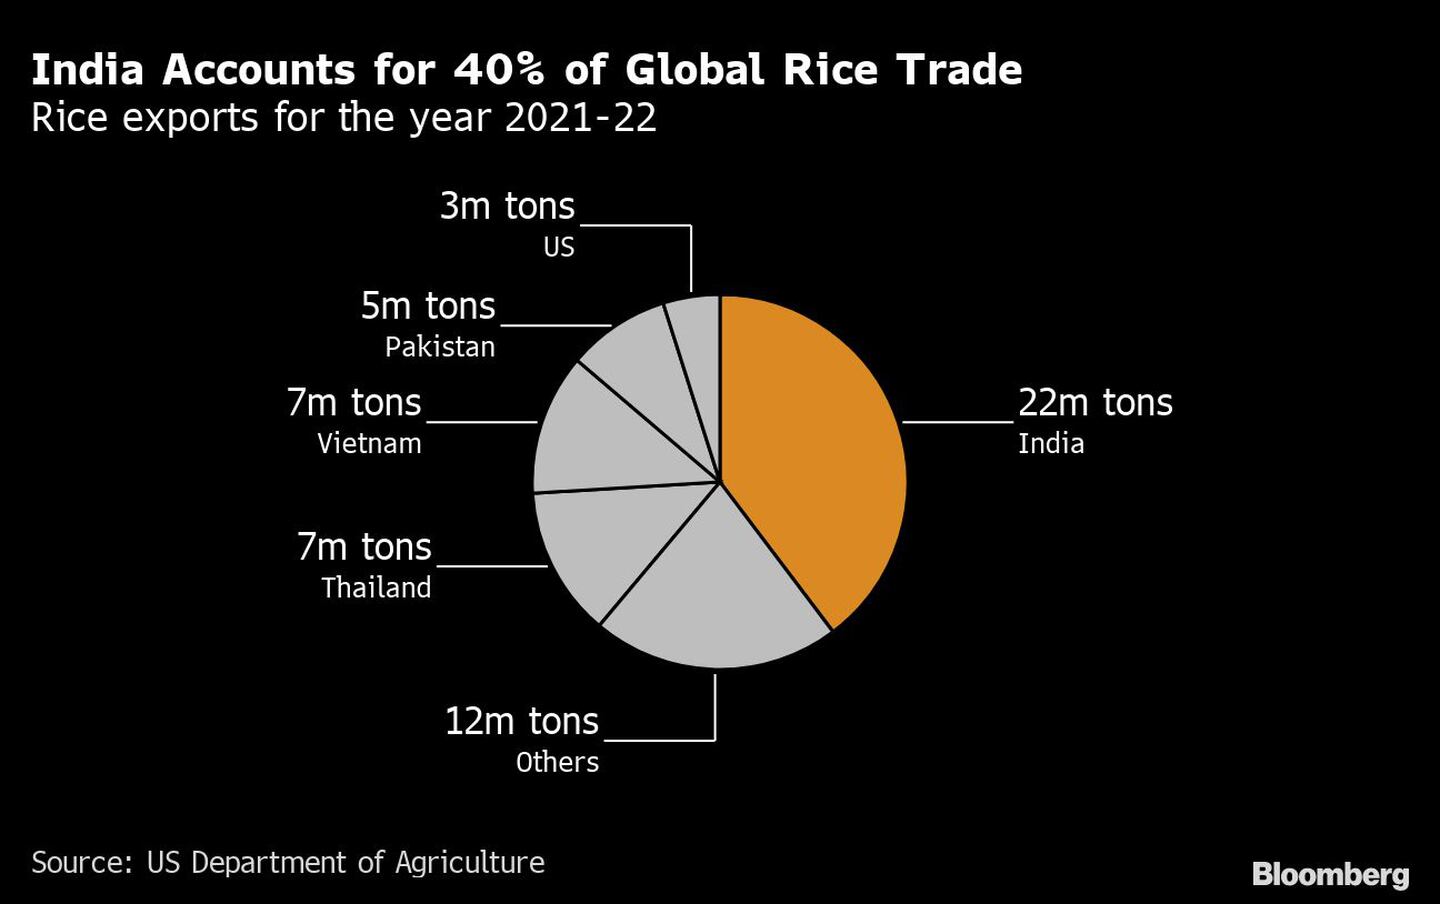 India representa el 40% del comercio mundial de arroz
Exportaciones de arroz para el año 2021-2022
3 millones de toneladas EE.UU.
5 millones de toneladas Pakistán
7 millones de toneladas Vietnam
7 millones de toneladas Tailandia
12 millones de toneladas otros
22 millones de toneladas Indiadfd